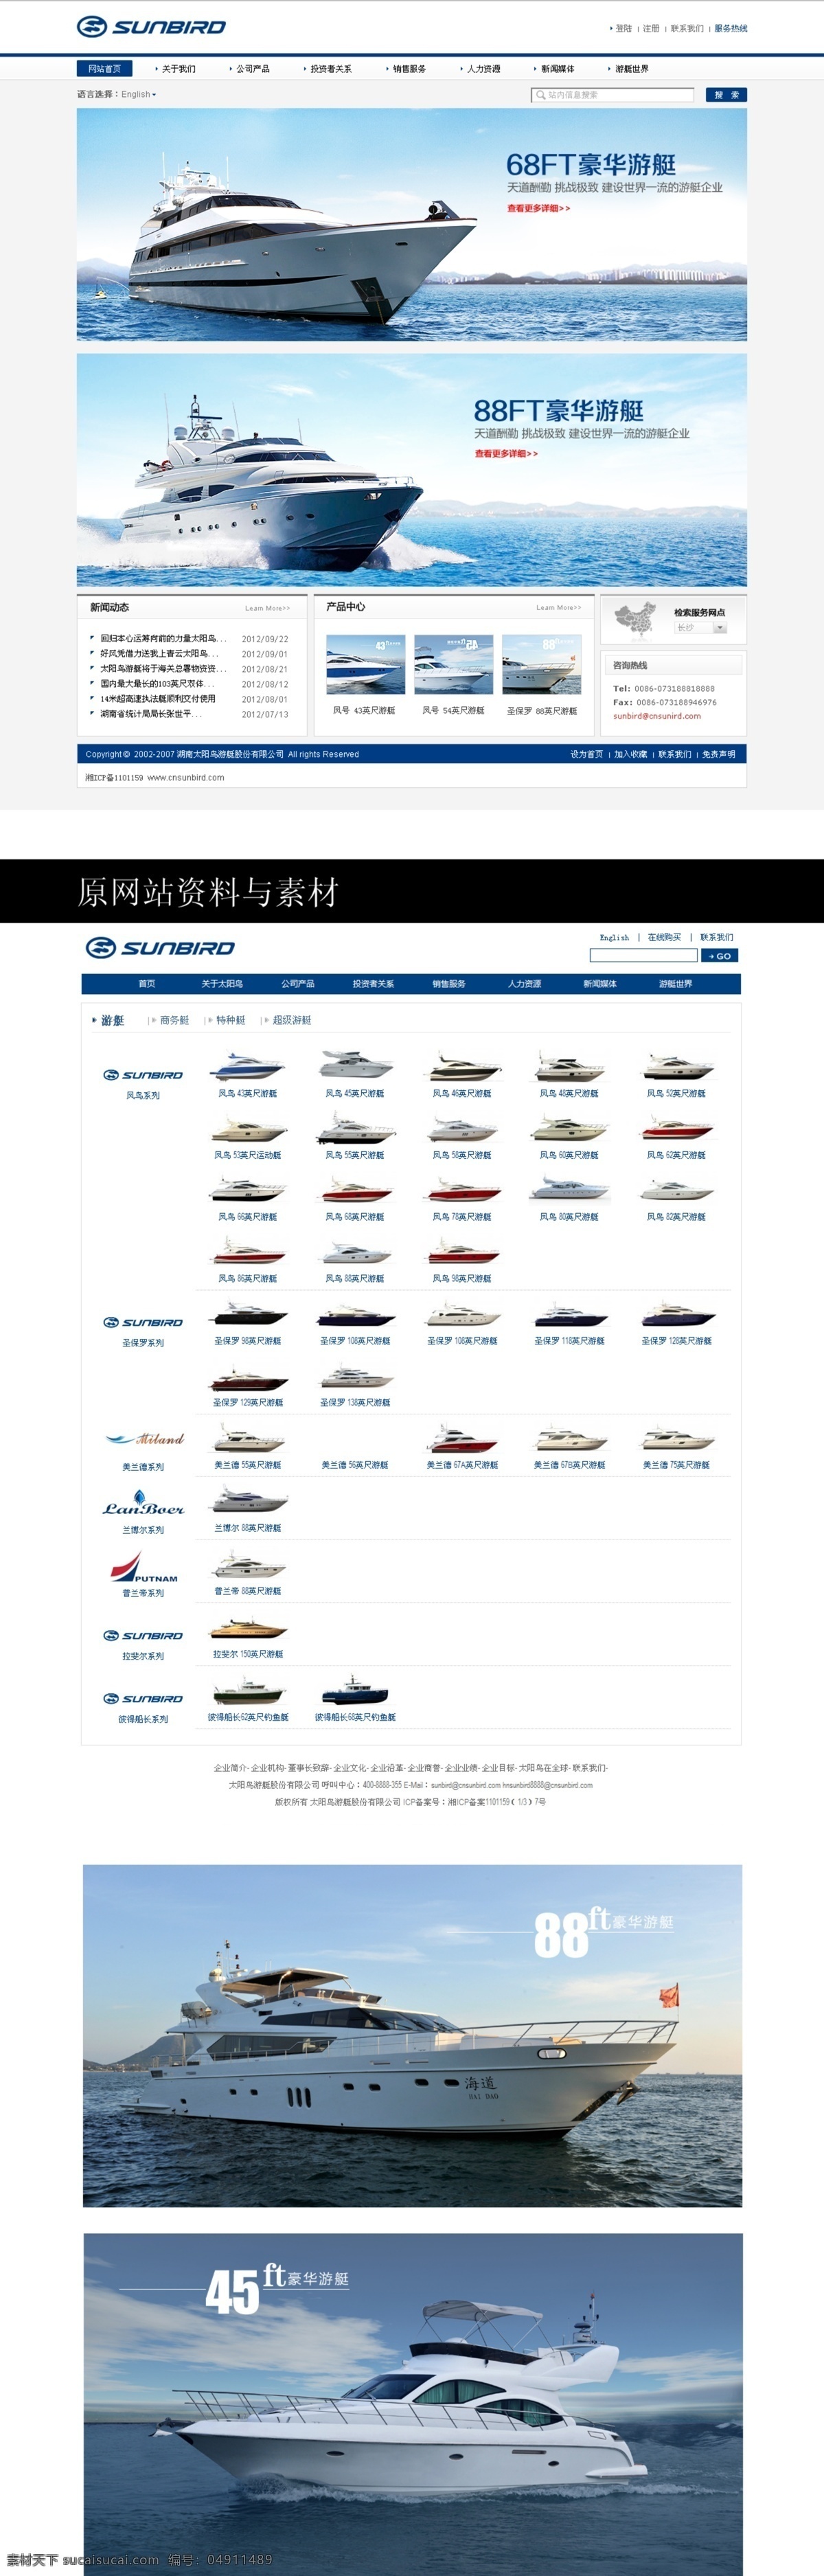 船舶素材下载 船舶模板下载 船舶 船舶设计 船舶网页 设计素材 网页模板 中文模板 源文件 白色